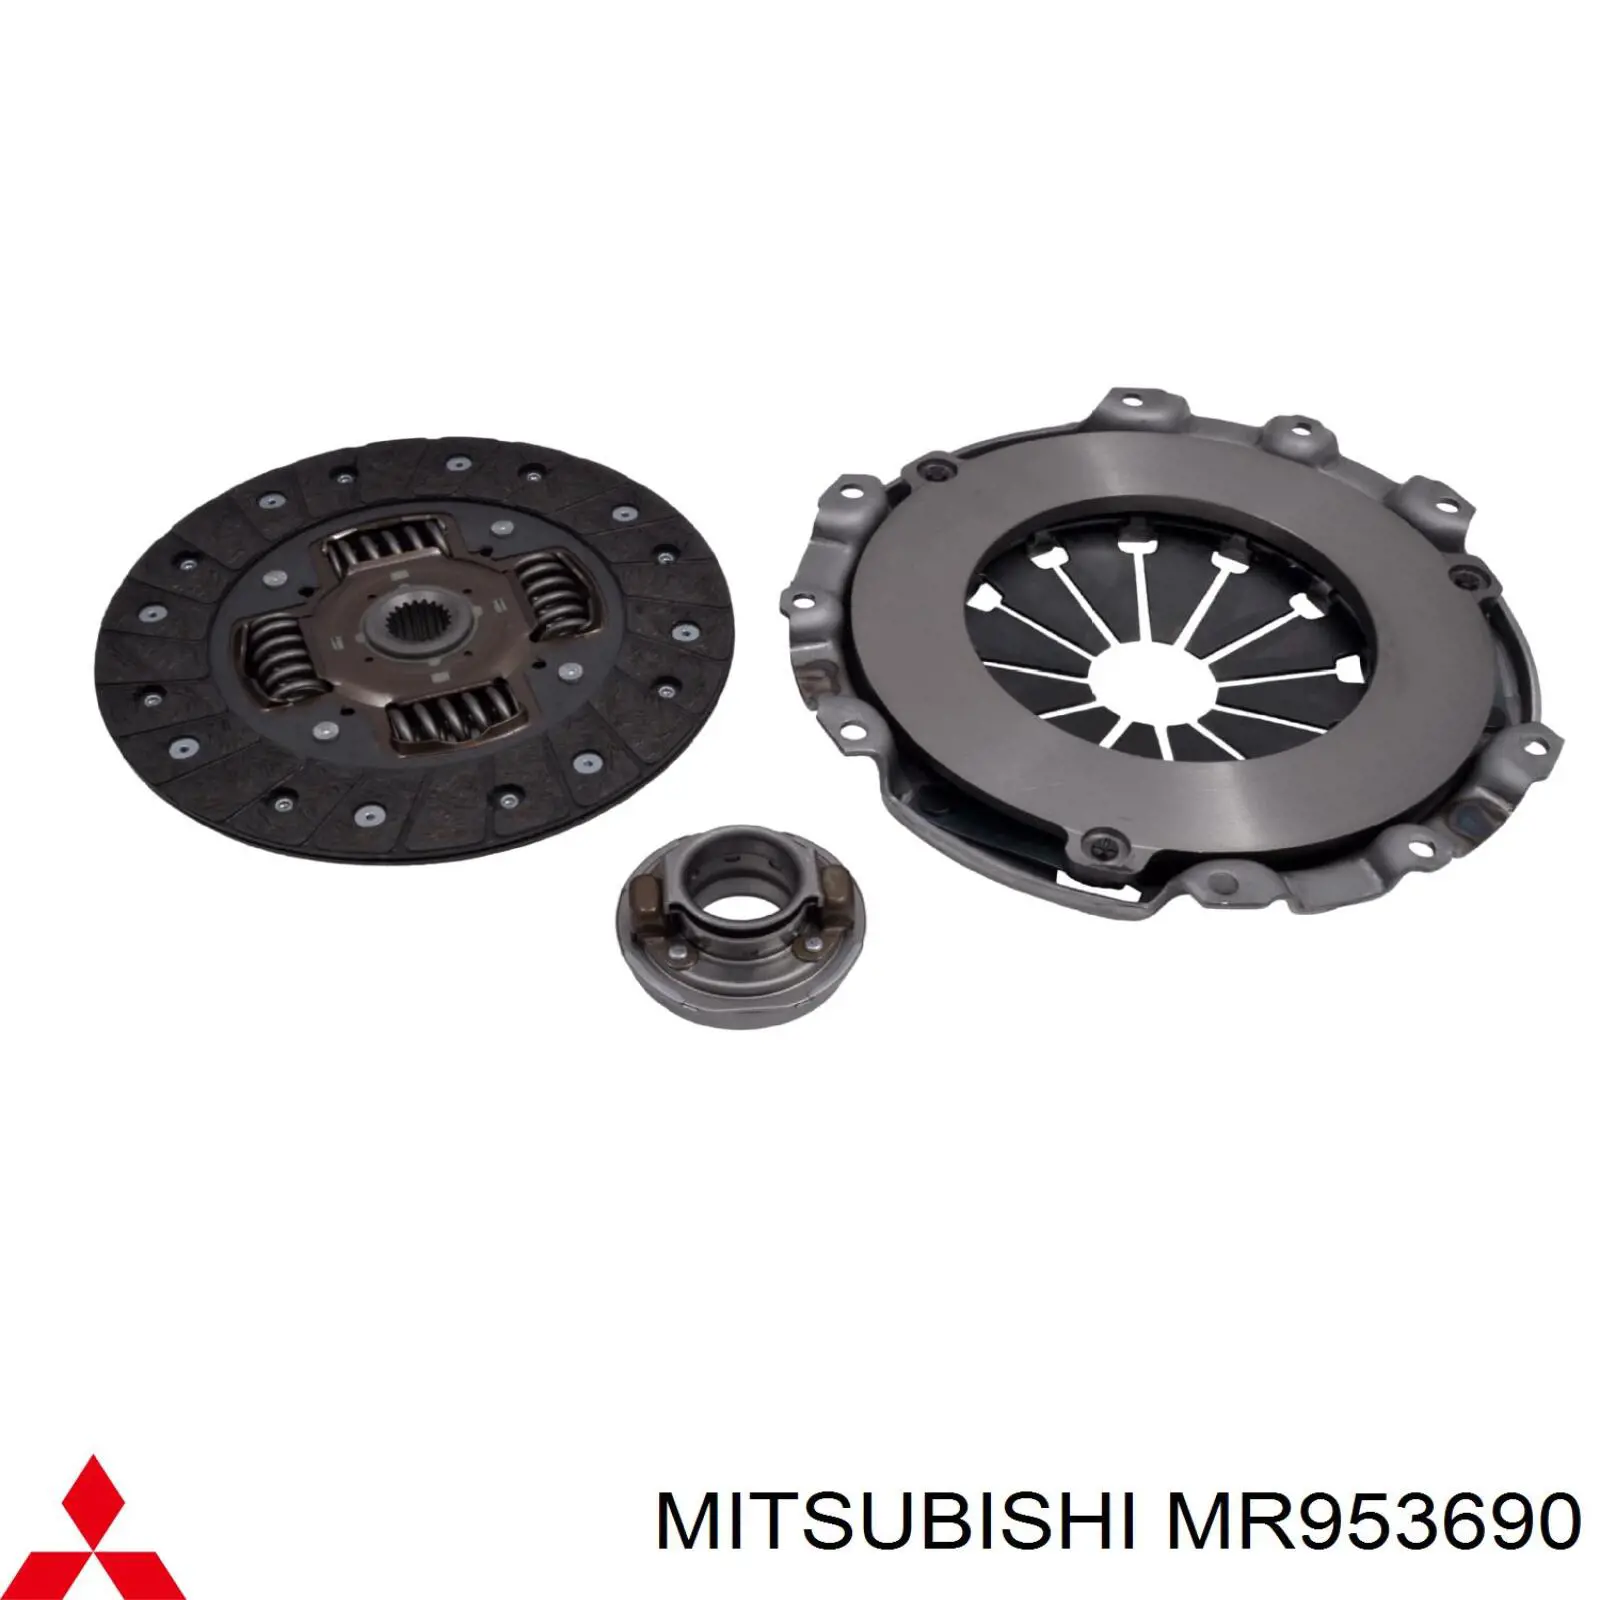 MR953690 Mitsubishi plato de presión del embrague